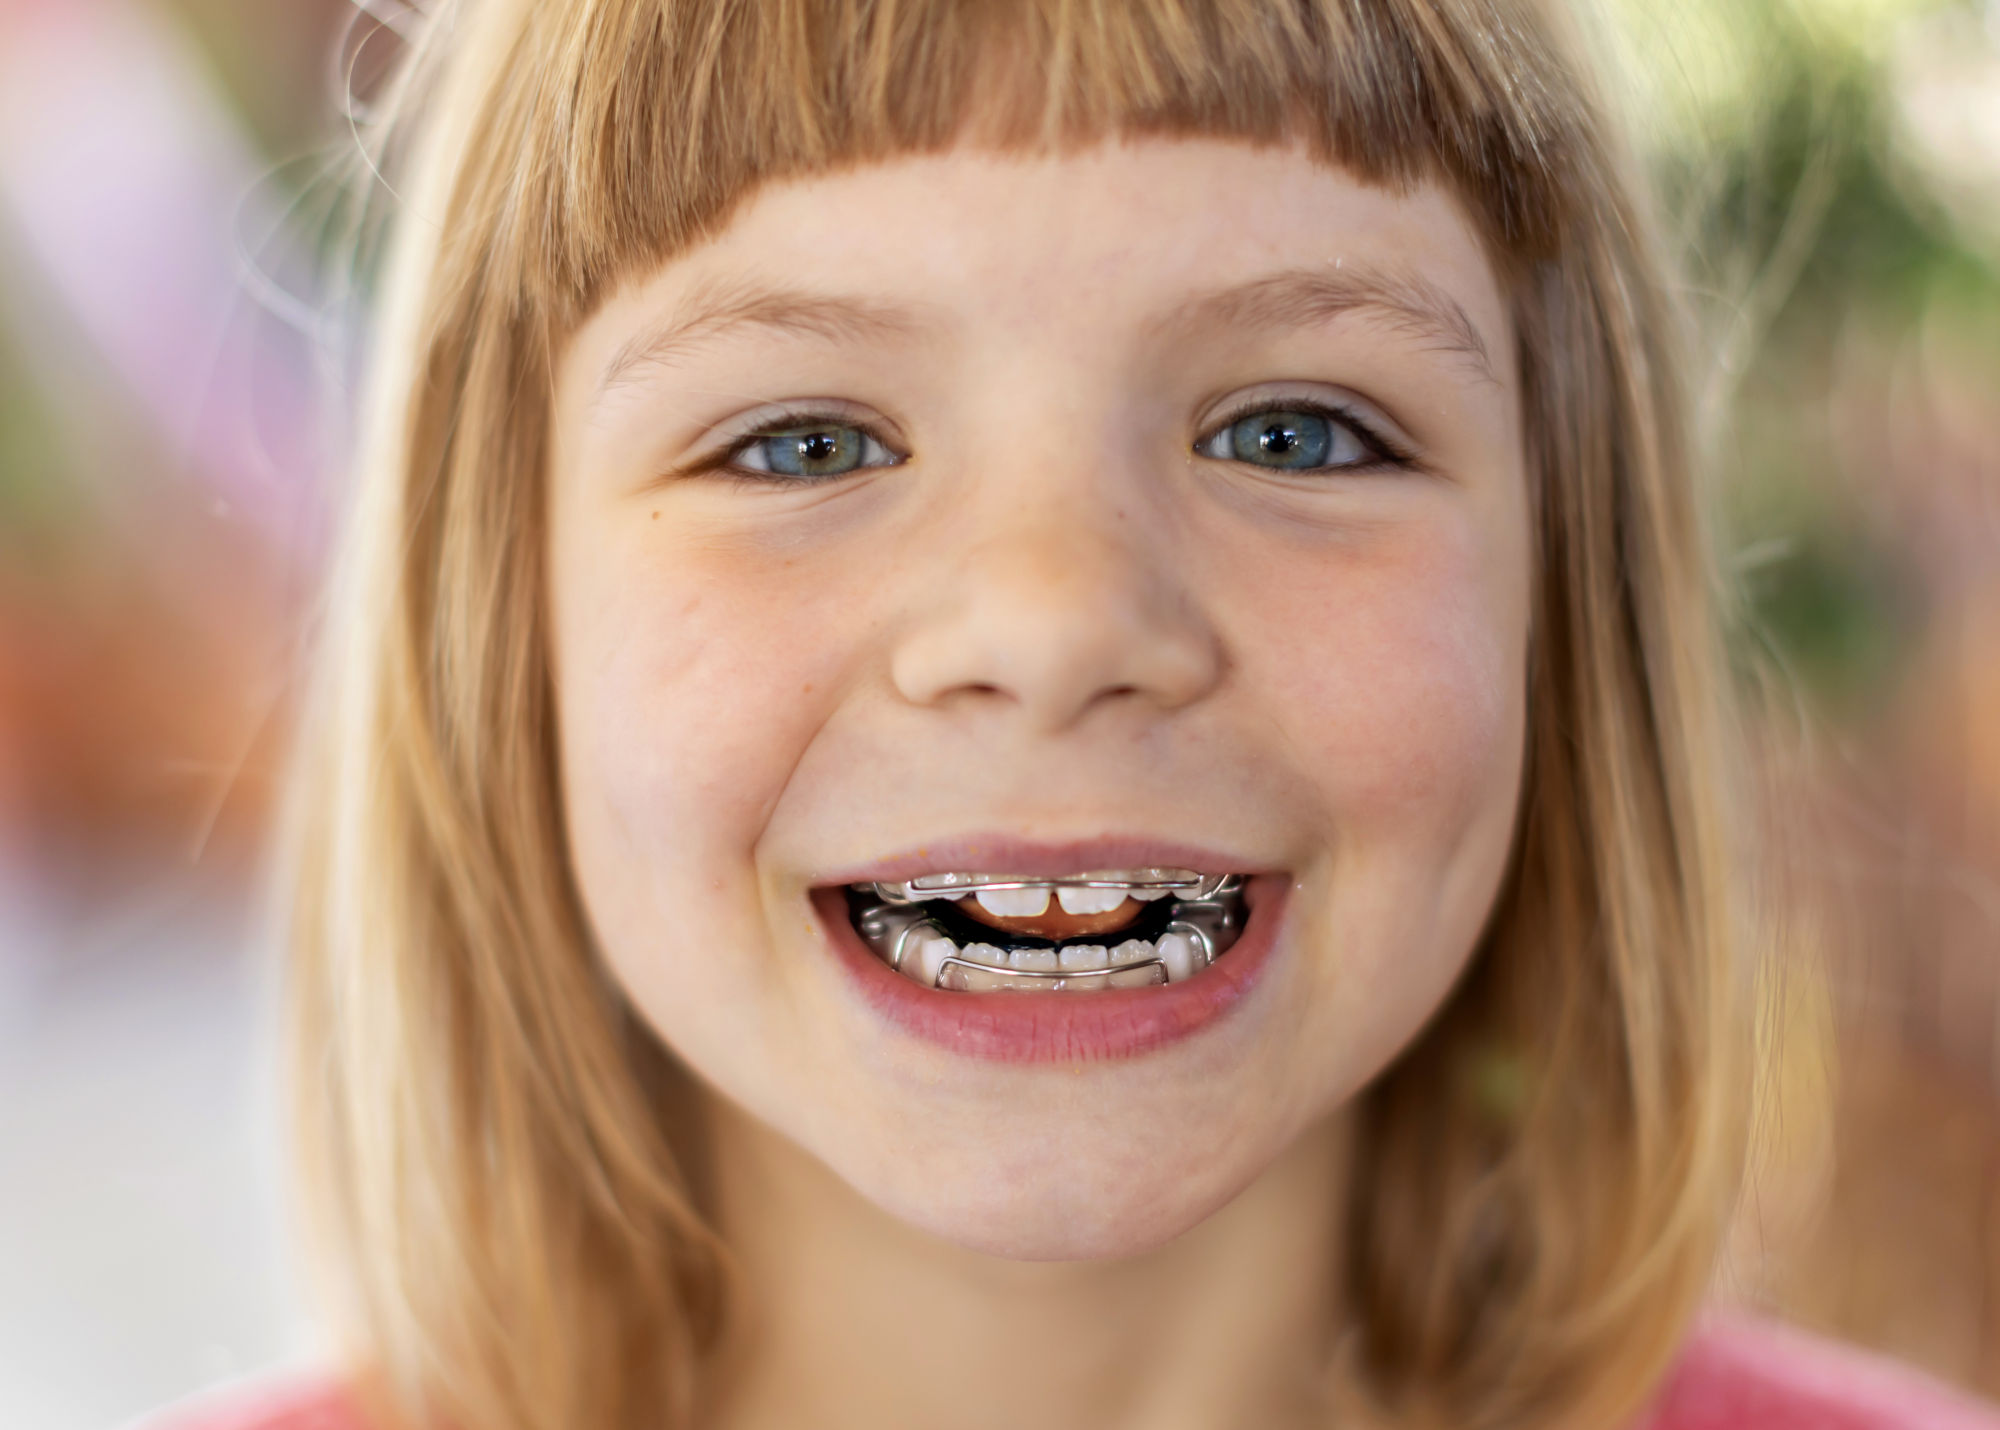 En agissant dès l'enfance avec des dispositifs orthodontiques appropriés, il est possible de prévenir l'installation durable des troubles